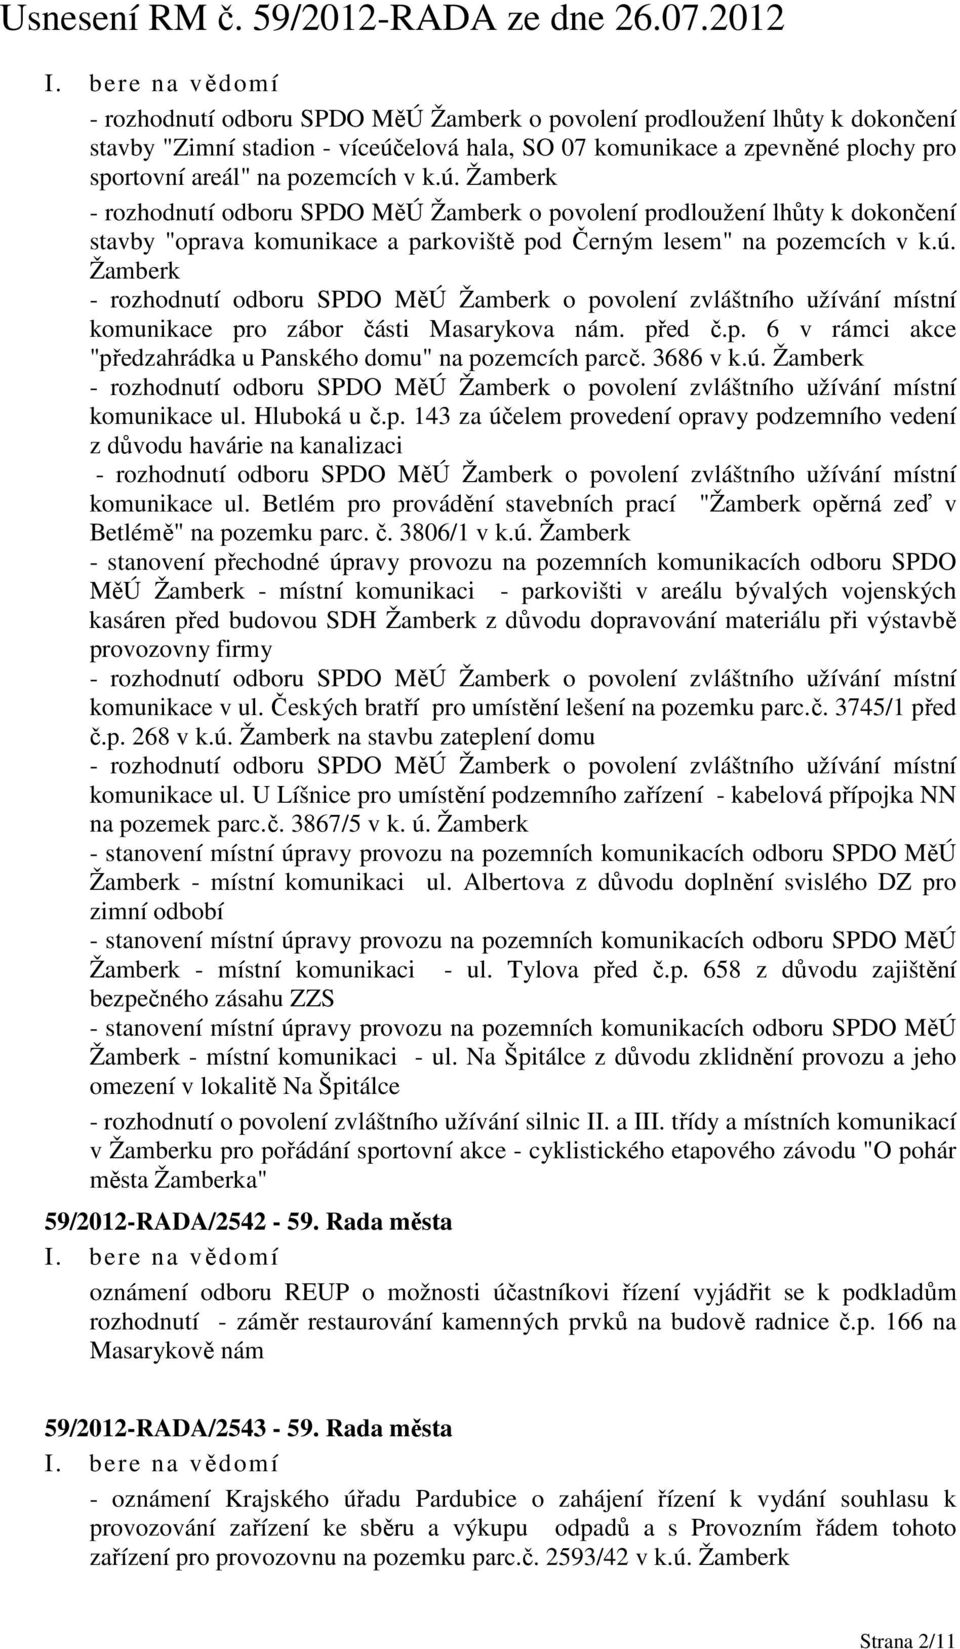 Žamberk - rozhodnutí odboru SPDO MěÚ Žamberk o povolení prodloužení lhůty k dokončení stavby "oprava komunikace a parkoviště pod Černým lesem" na pozemcích v k.ú.